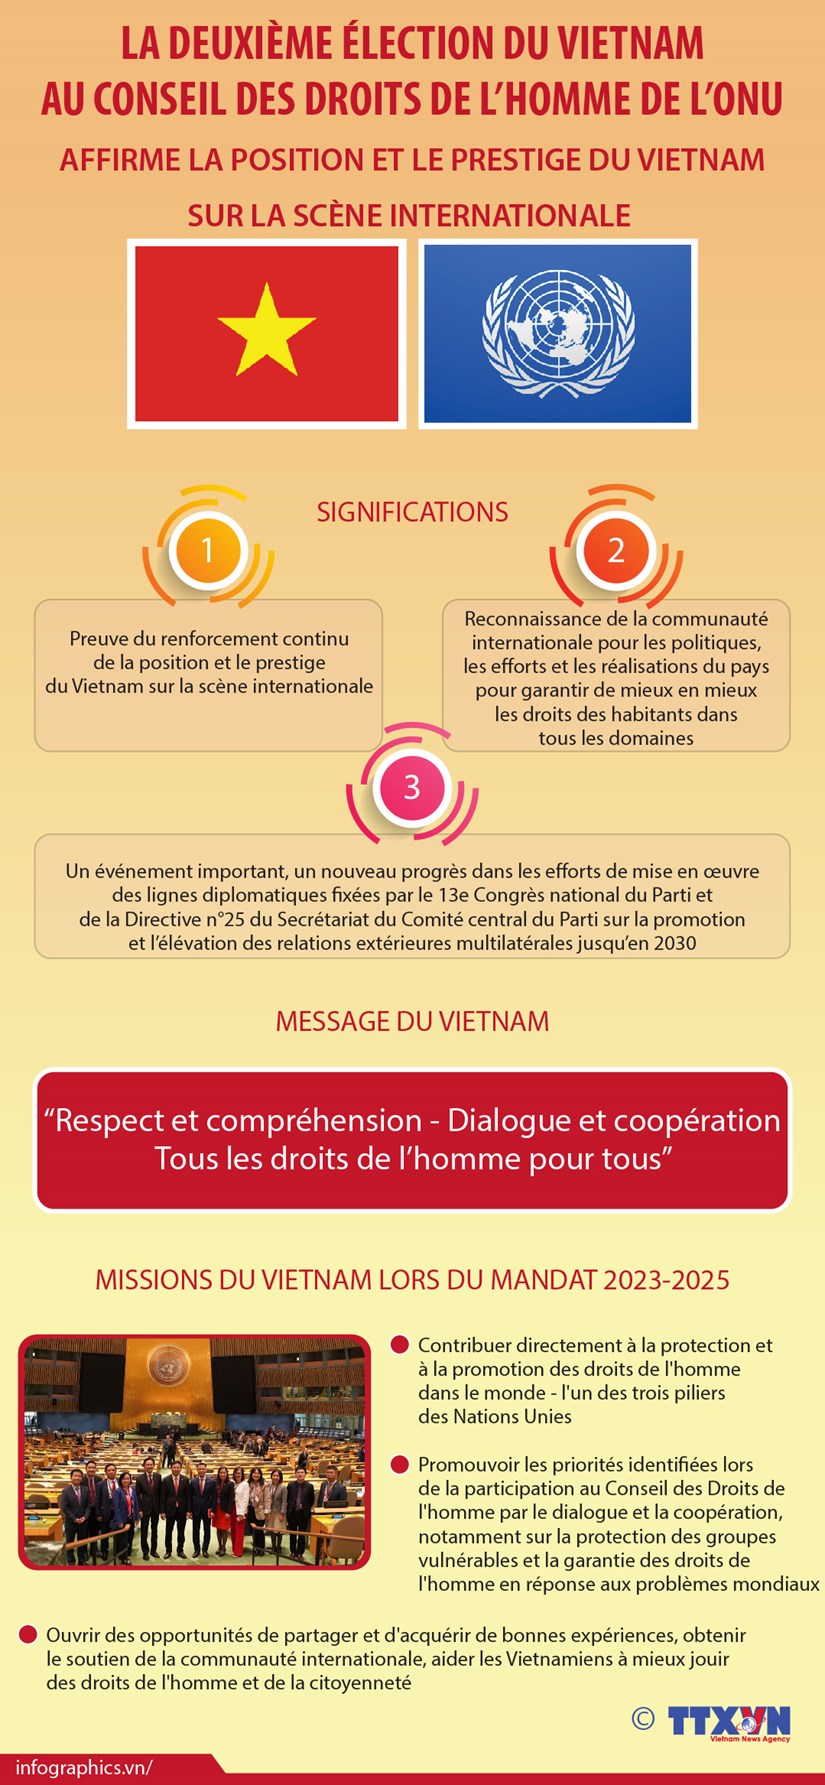 Election du Vietnam au CDH de l´ONU: Affirmation de la position et du prestige du pays hinh anh 1